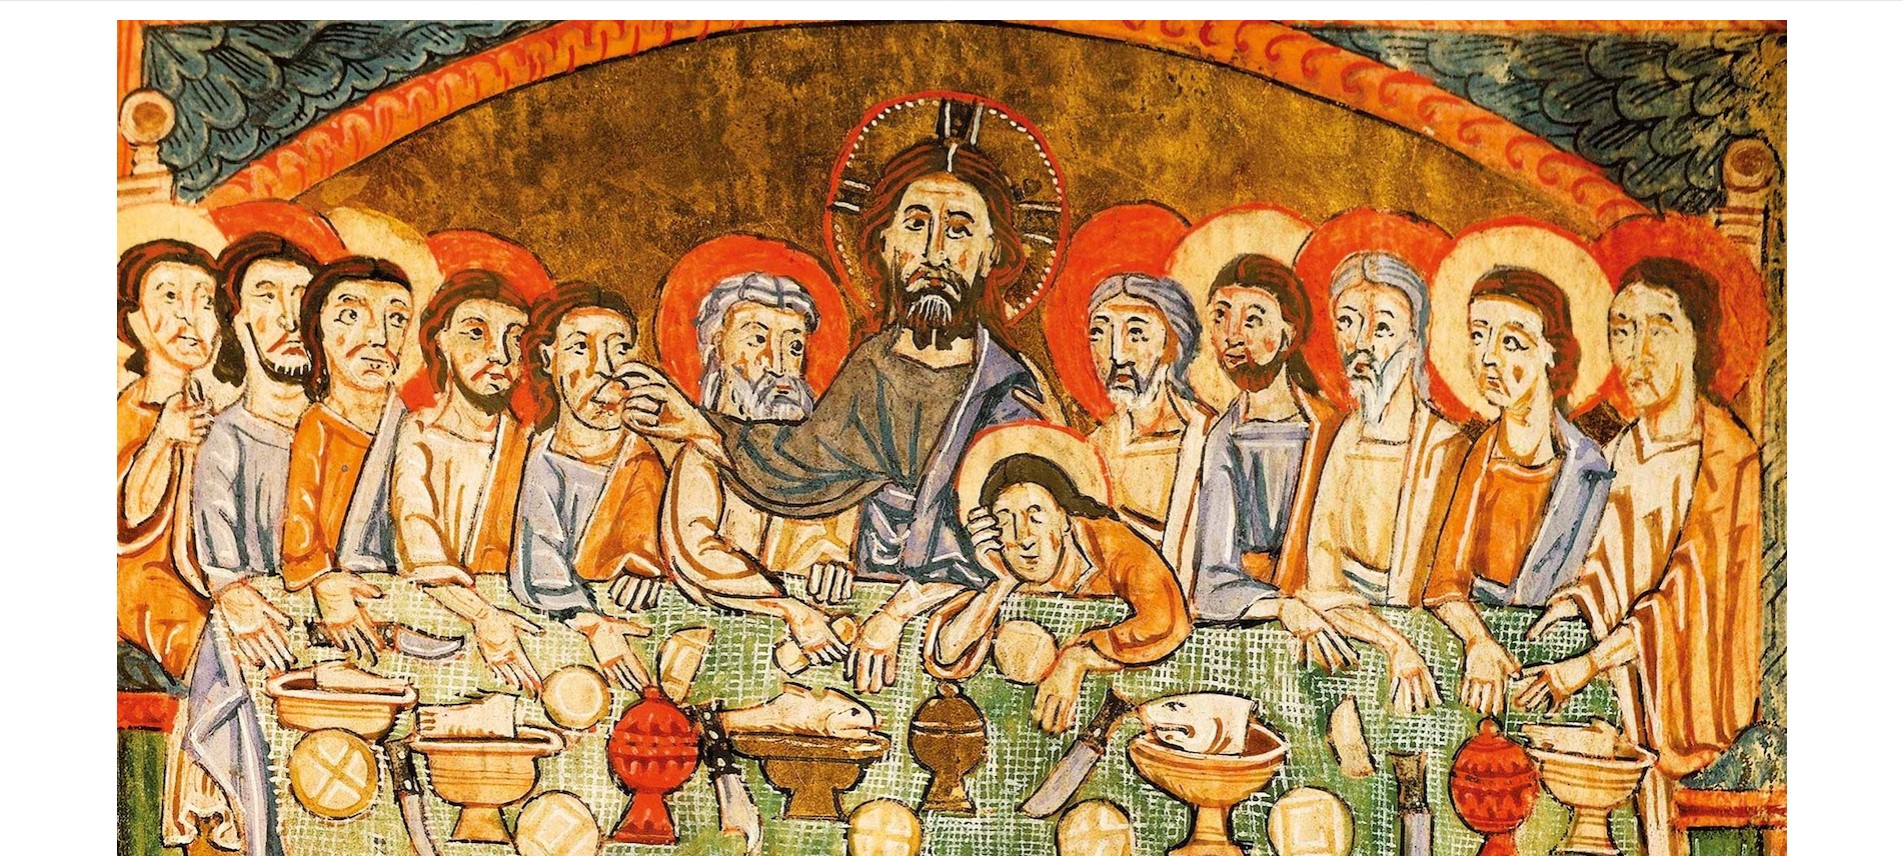 Ο Μυστικός Δείπνος σε μικρογραφία του 13ου αιώνα από το Ευαγγέλιο των Μεγάλων Εορτών